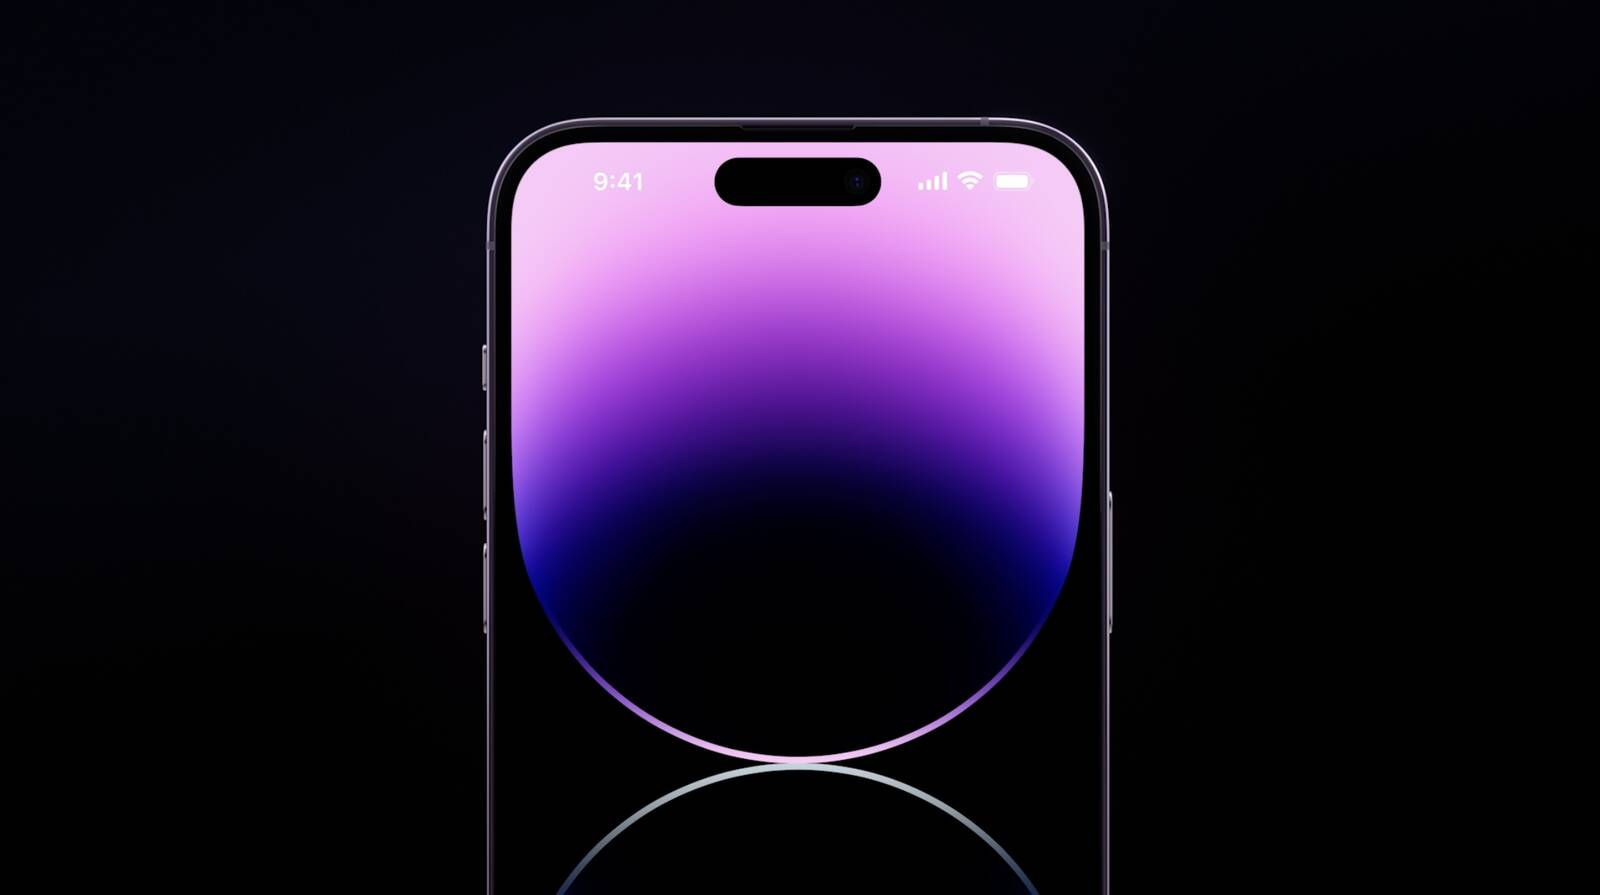 Chiếc iPhone 14 Pro Max đang chờ đón bạn với một loạt những tính năng nâng cấp và màn hình ấn tượng nhất hiện nay. Trải nghiệm hình ảnh chân thật, sắc nét, màu sắc sống động là giải pháp hoàn hảo cho những người yêu thích vẻ đẹp.